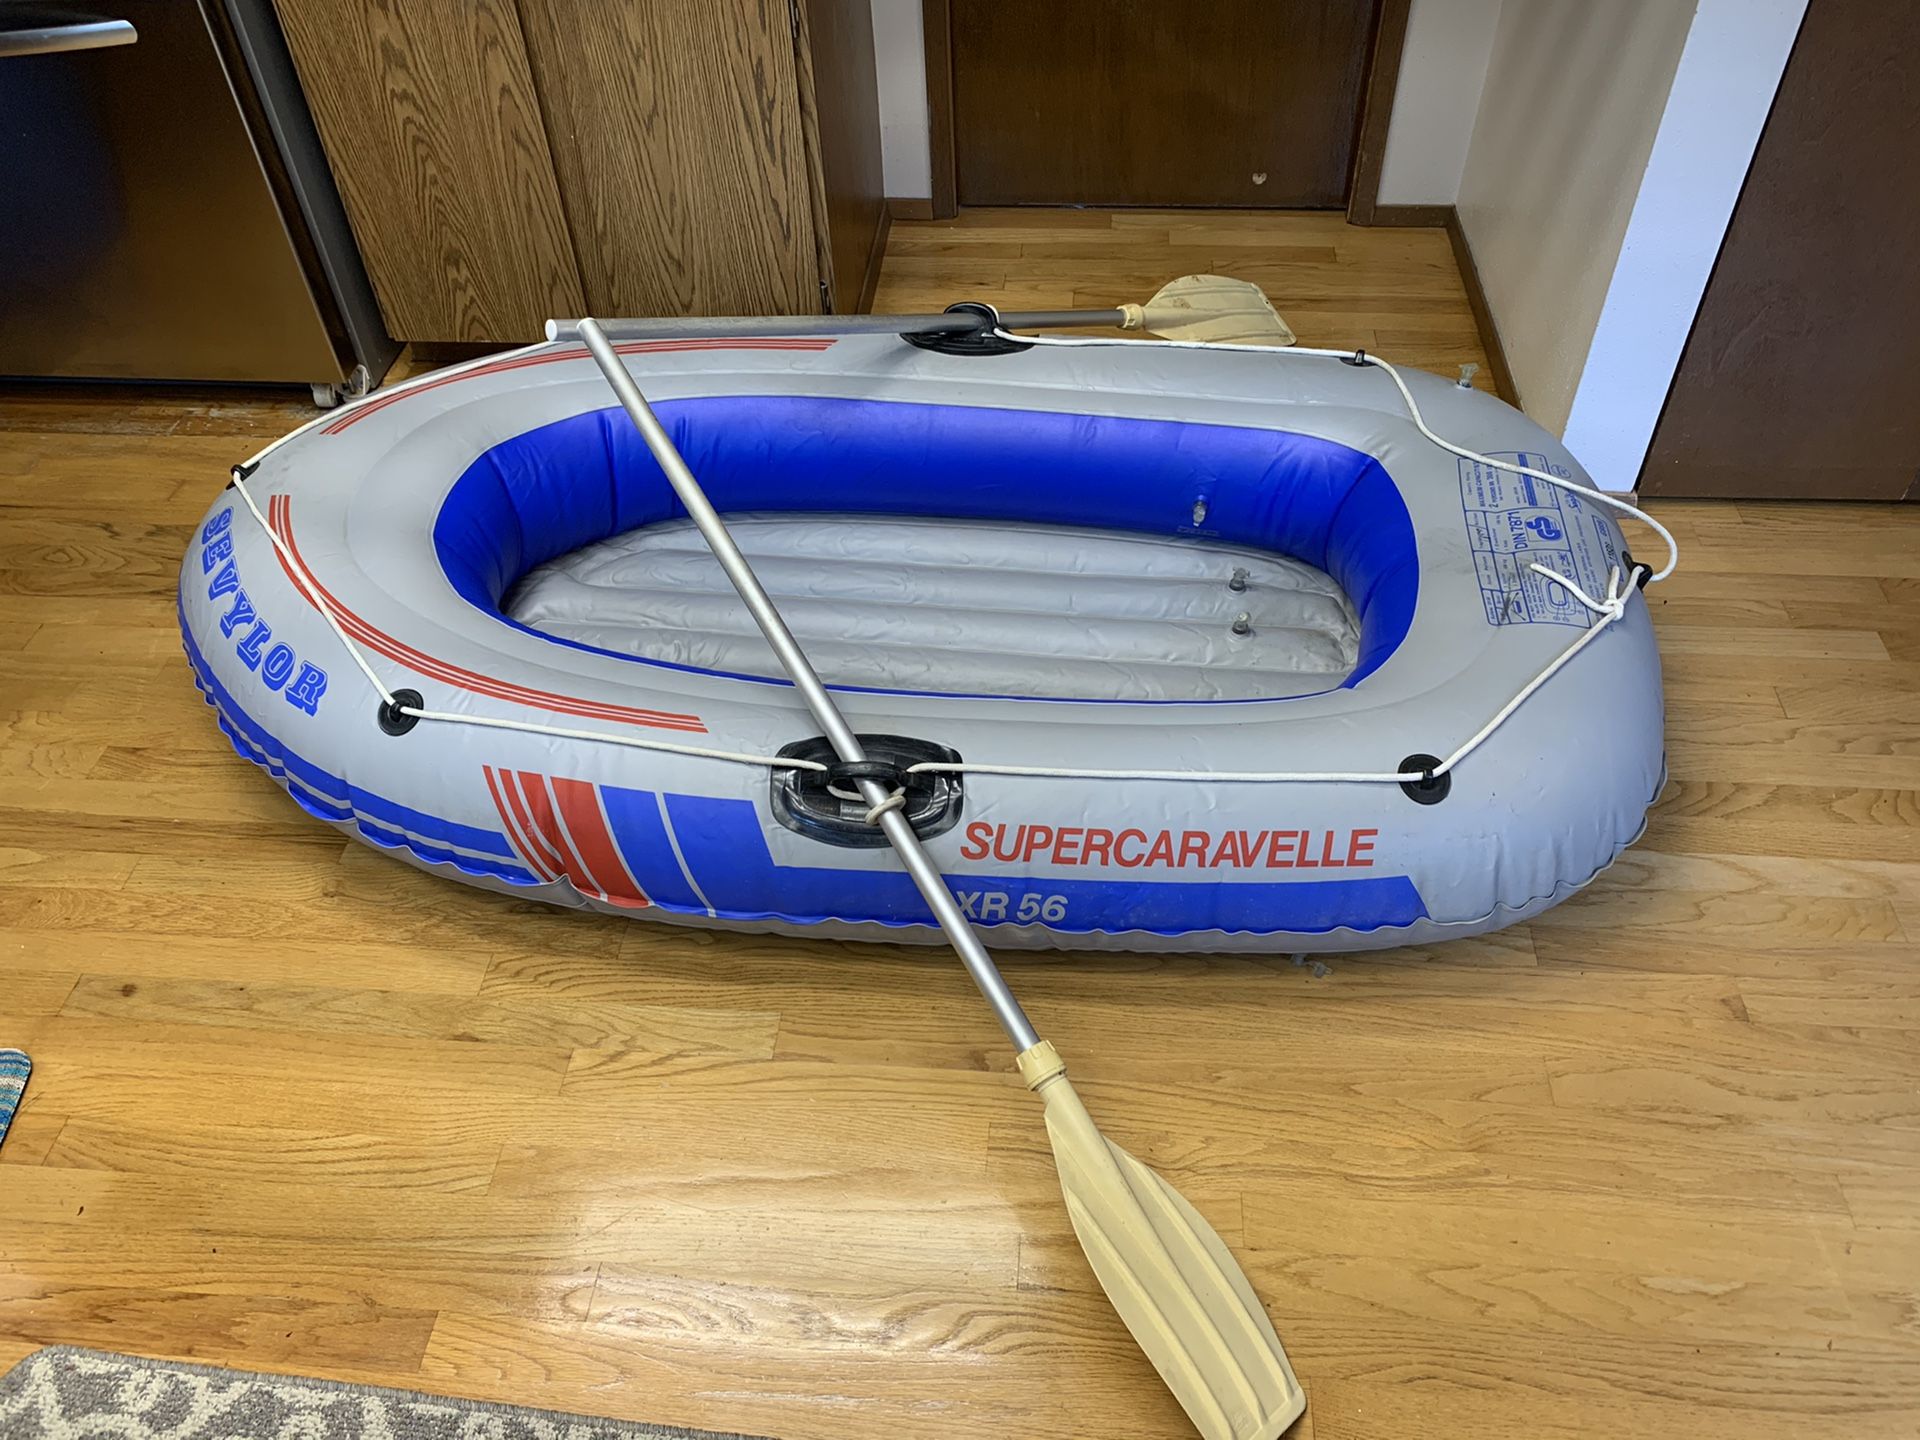 Sevylor Super Caravelle Inflatable Boat